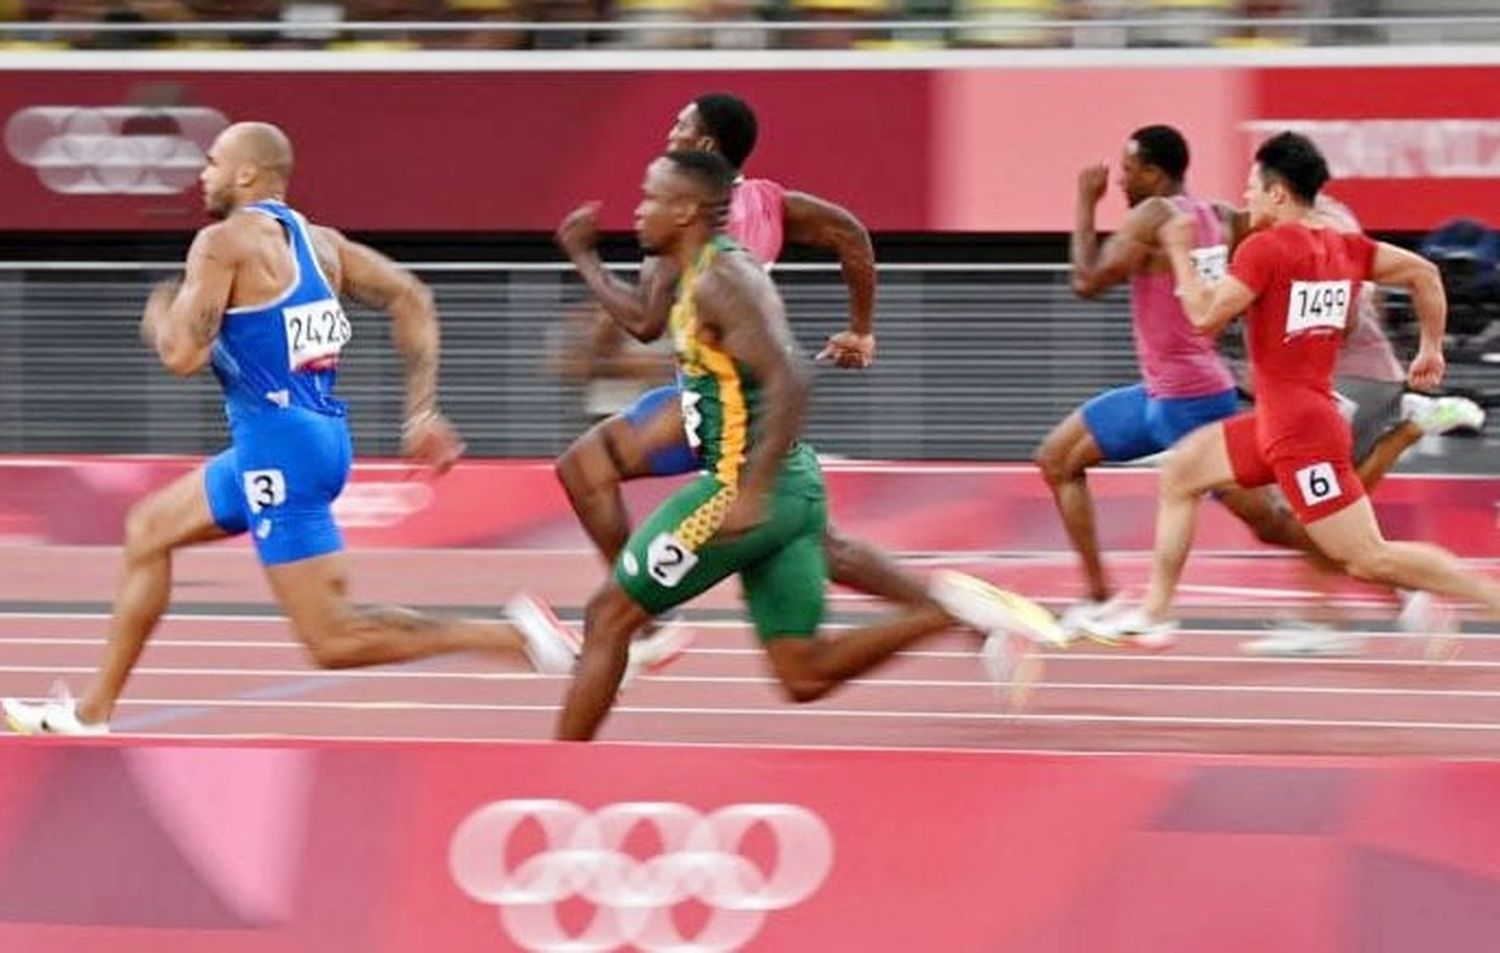 La Iglesia se convierte en “olímpica” para acompañar a los atletas